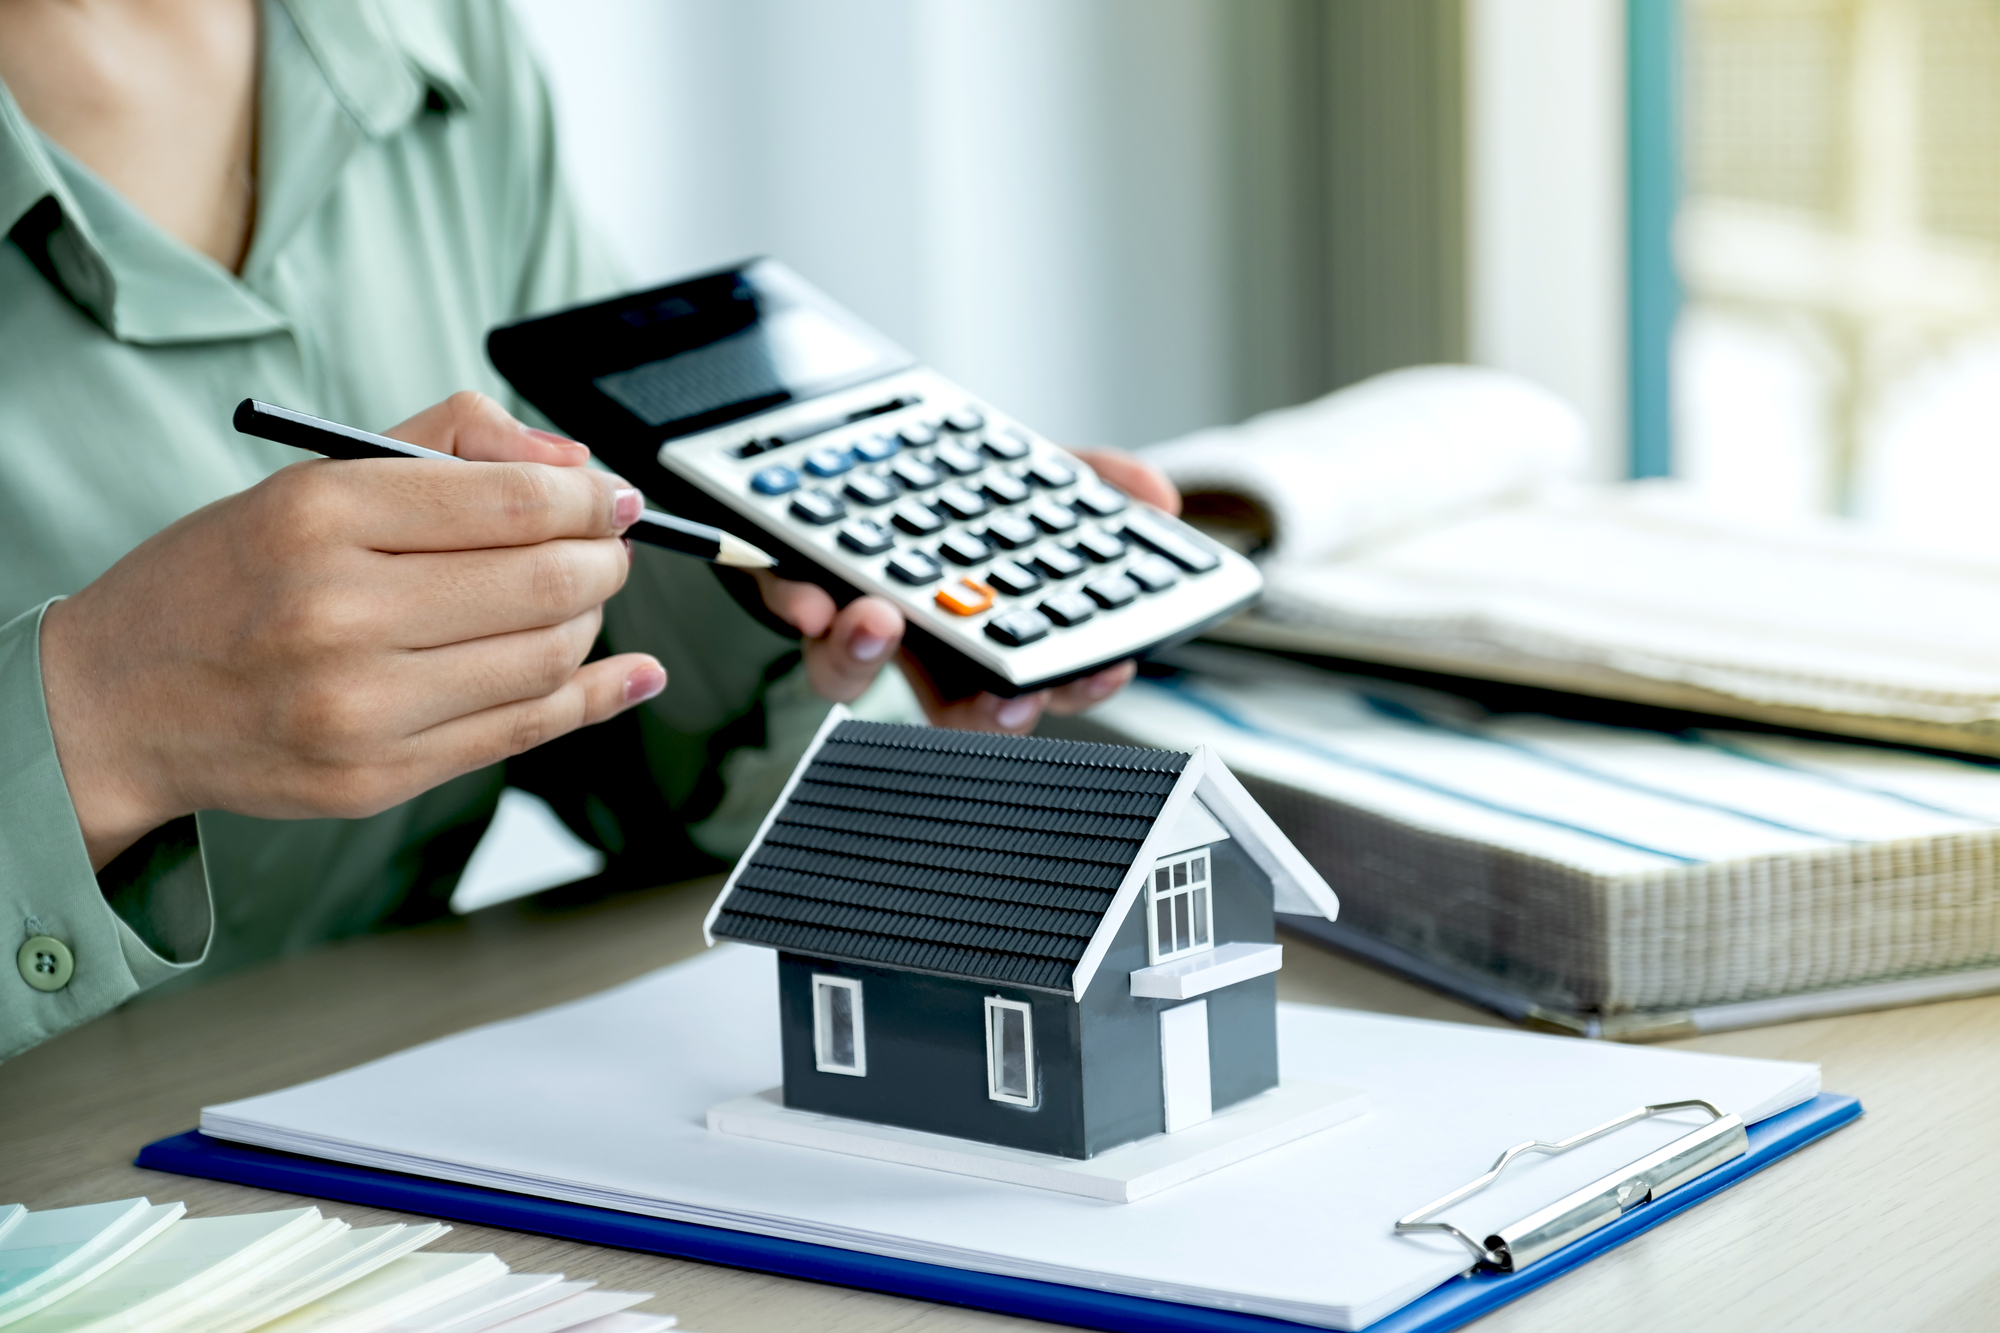 Plazos en la reclamación de gastos hipotecarios: claves tras la sentencia del TJUE